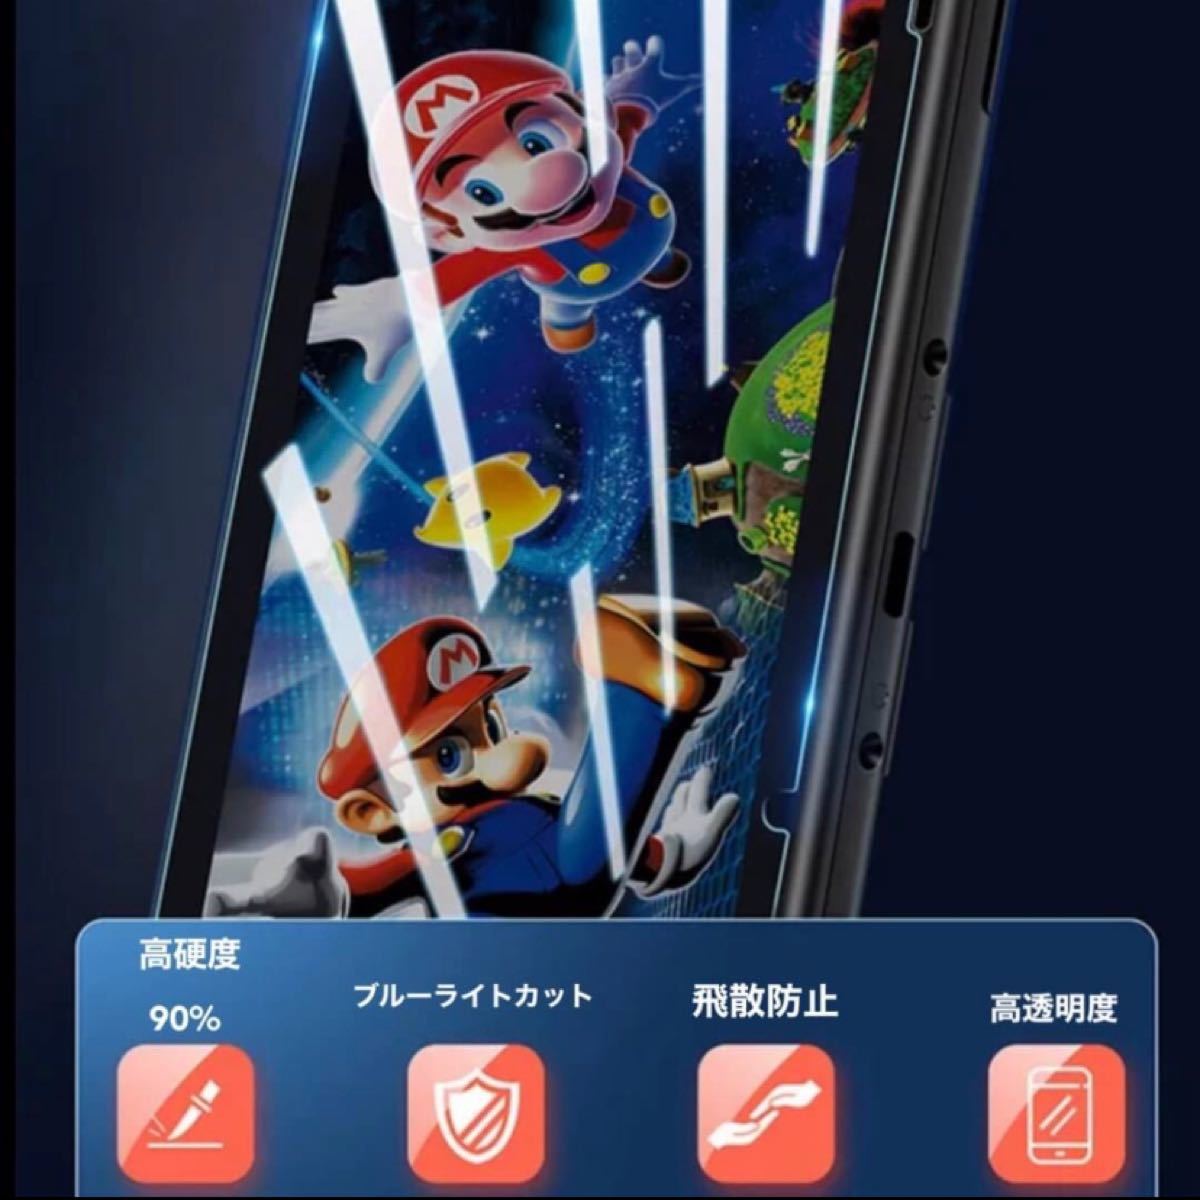 任天堂 スイッチ Switch ブルーライト カット ガラスフィルム 液晶 画面 ニンテンドー